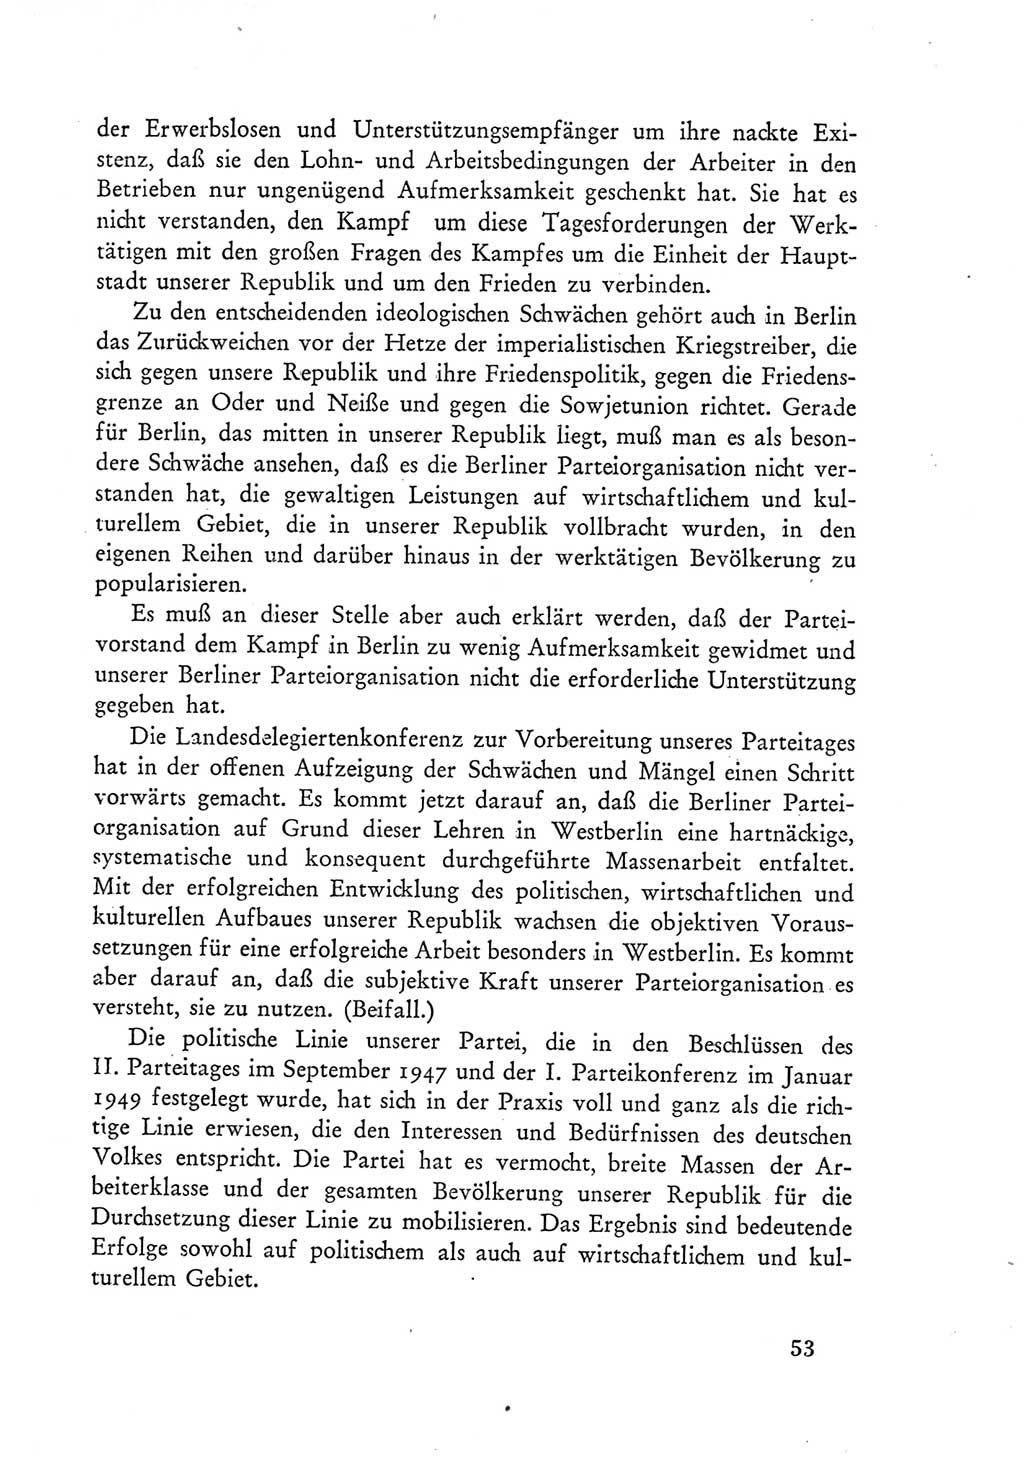 Protokoll der Verhandlungen des Ⅲ. Parteitages der Sozialistischen Einheitspartei Deutschlands (SED) [Deutsche Demokratische Republik (DDR)] 1950, Band 1, Seite 53 (Prot. Verh. Ⅲ. PT SED DDR 1950, Bd. 1, S. 53)